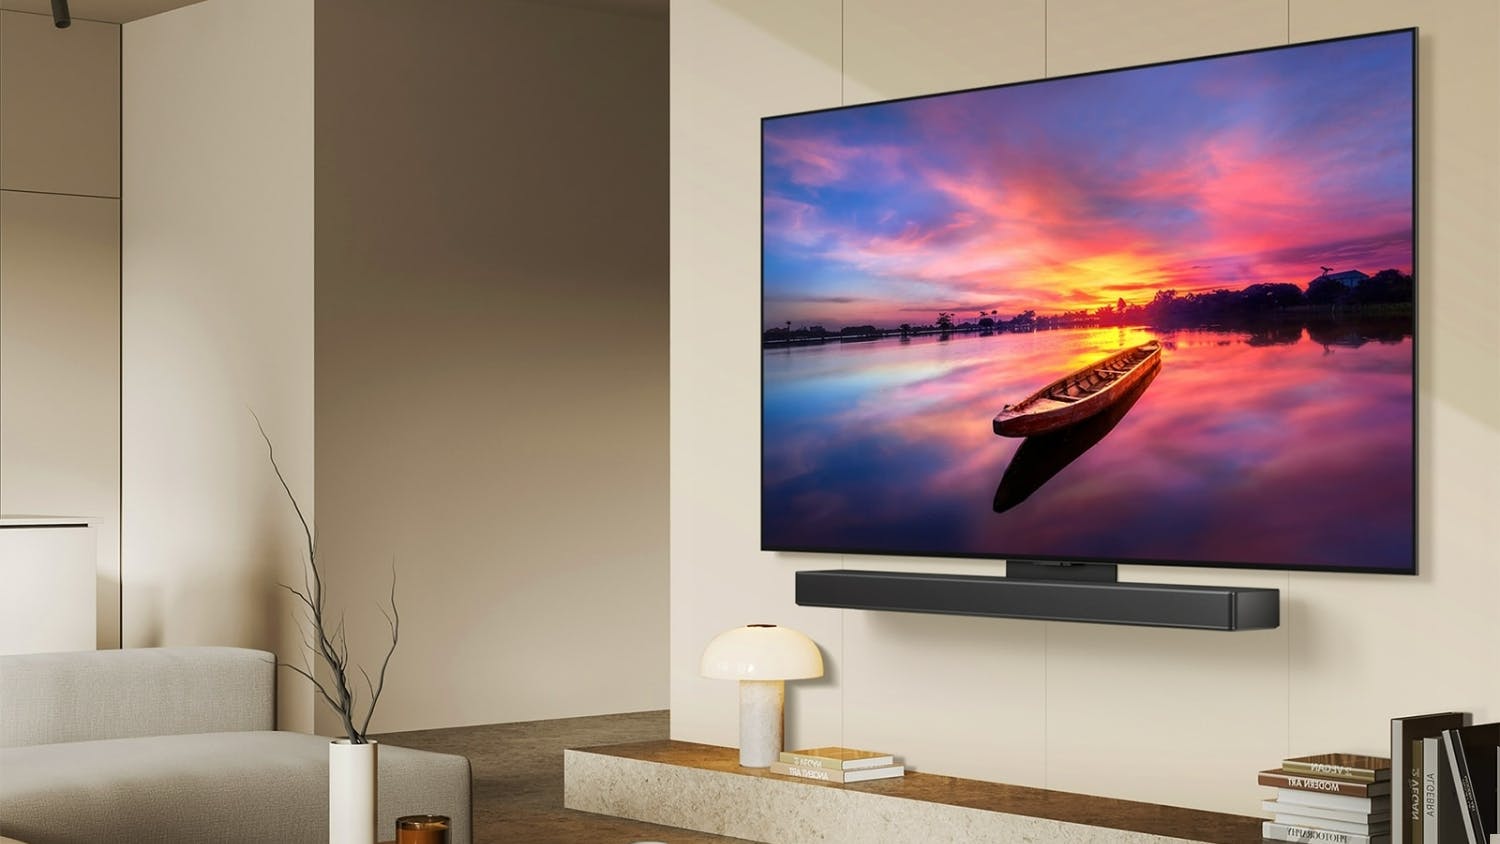 LG 83" C4 Smart 4K OLED evo TV (2024)